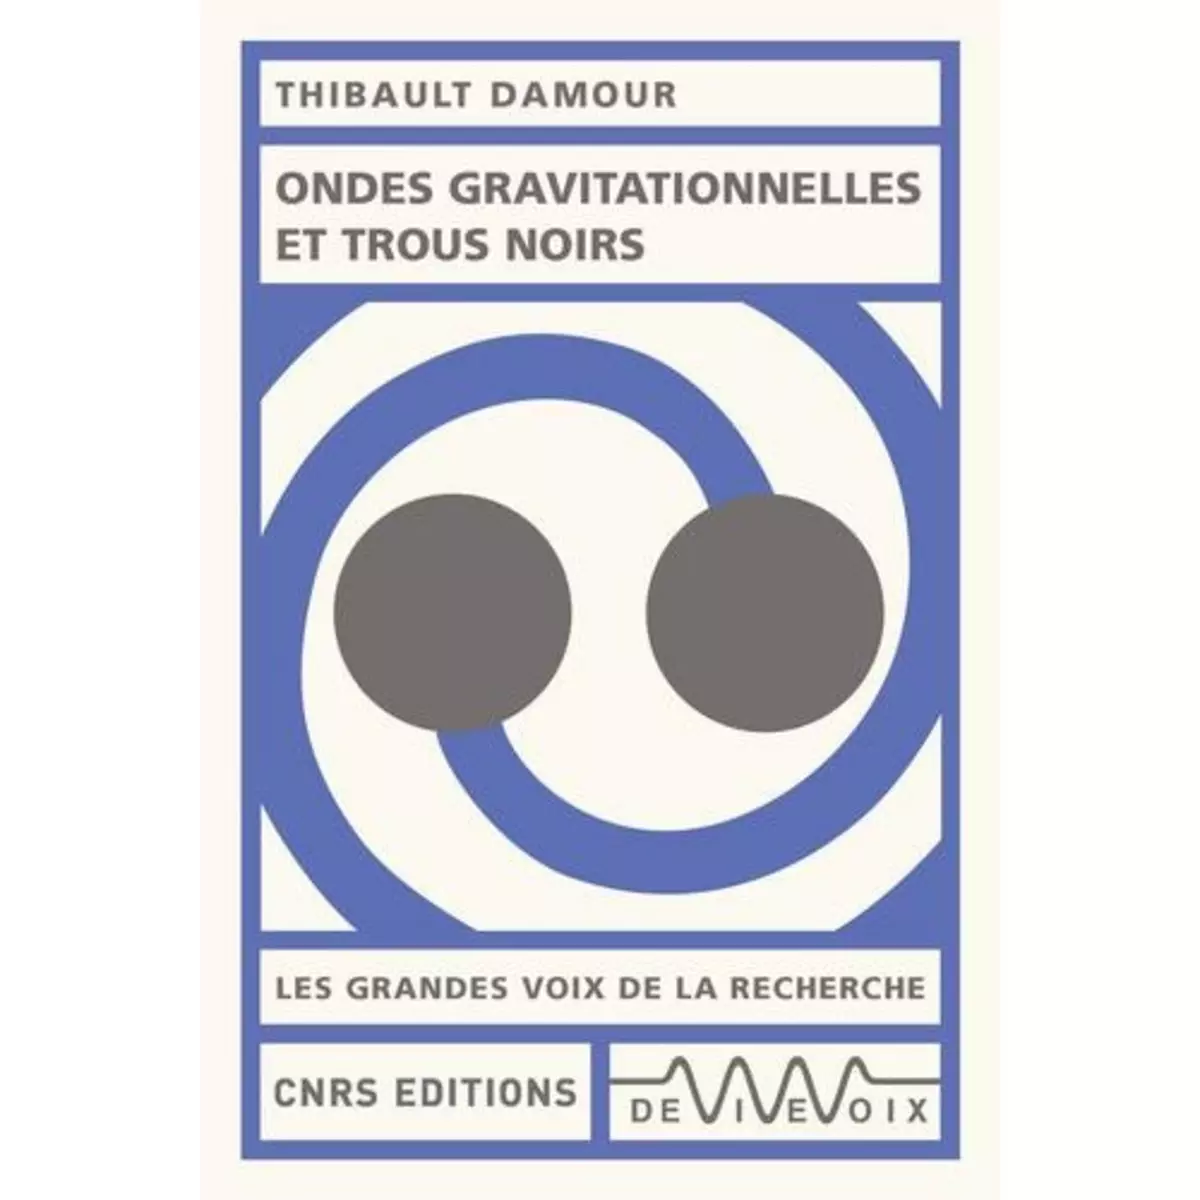  ONDES GRAVITATIONNELLES ET TROUS NOIRS, Damour Thibault